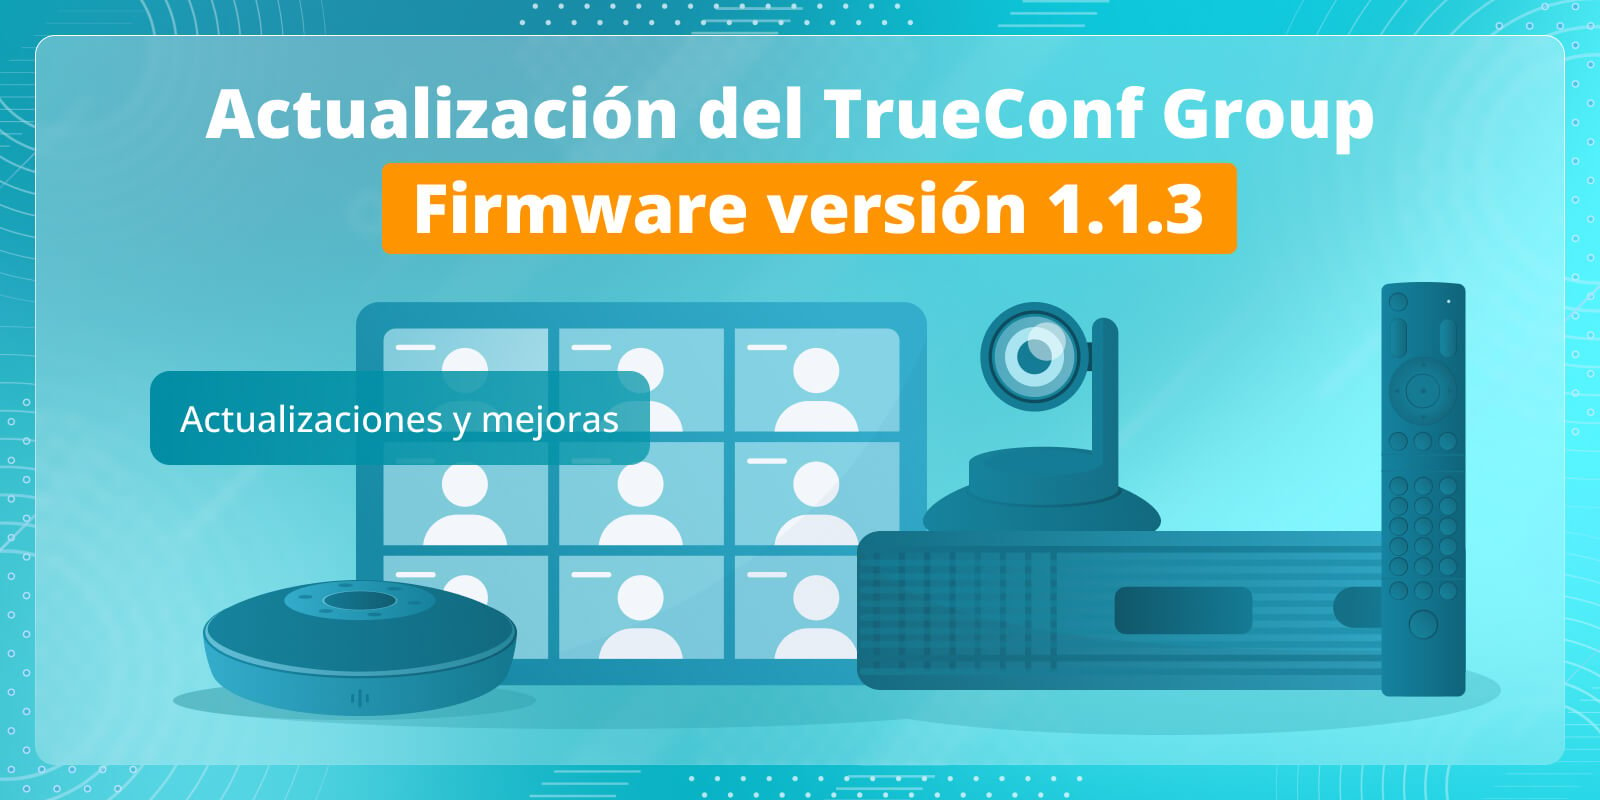 TrueConf Group 1.1.3: actualizaciones y mejoras 2